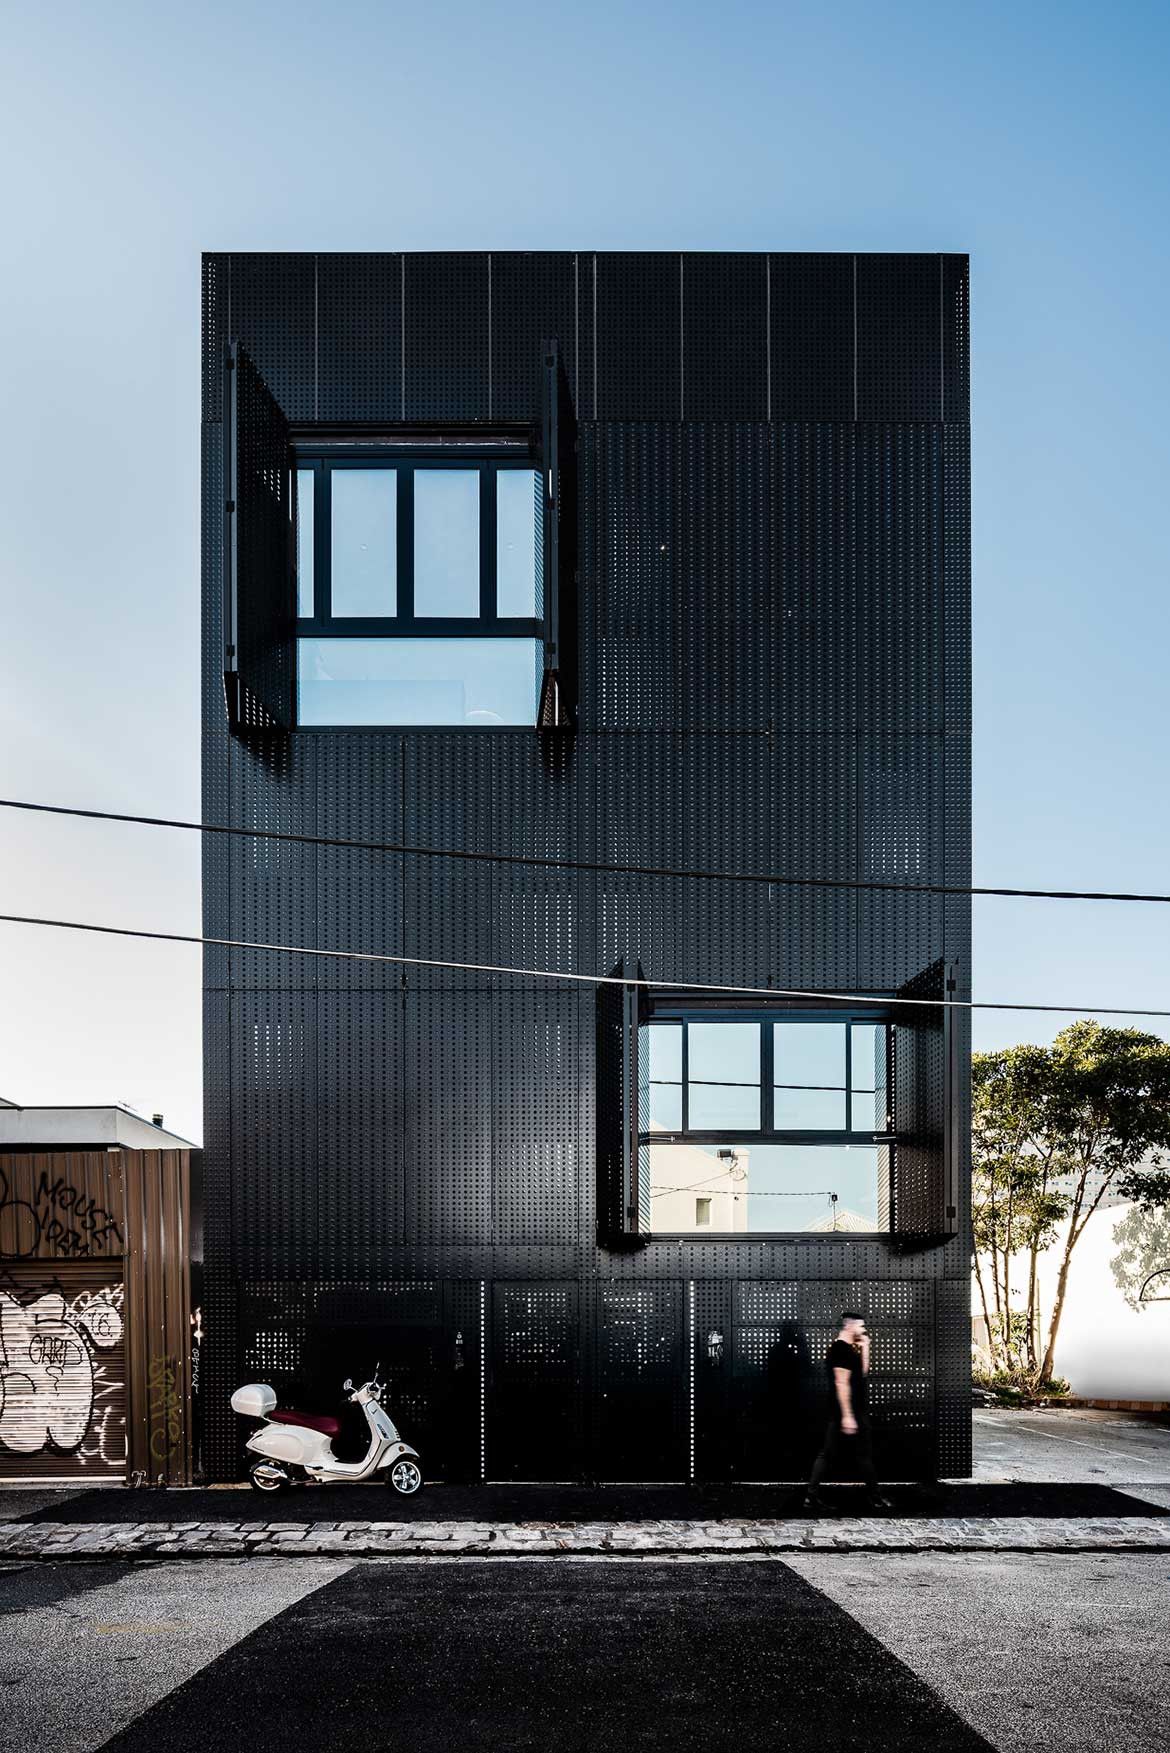 Fasad rumah ini seluruhnya menggunakan elemen baja berwarna hitam